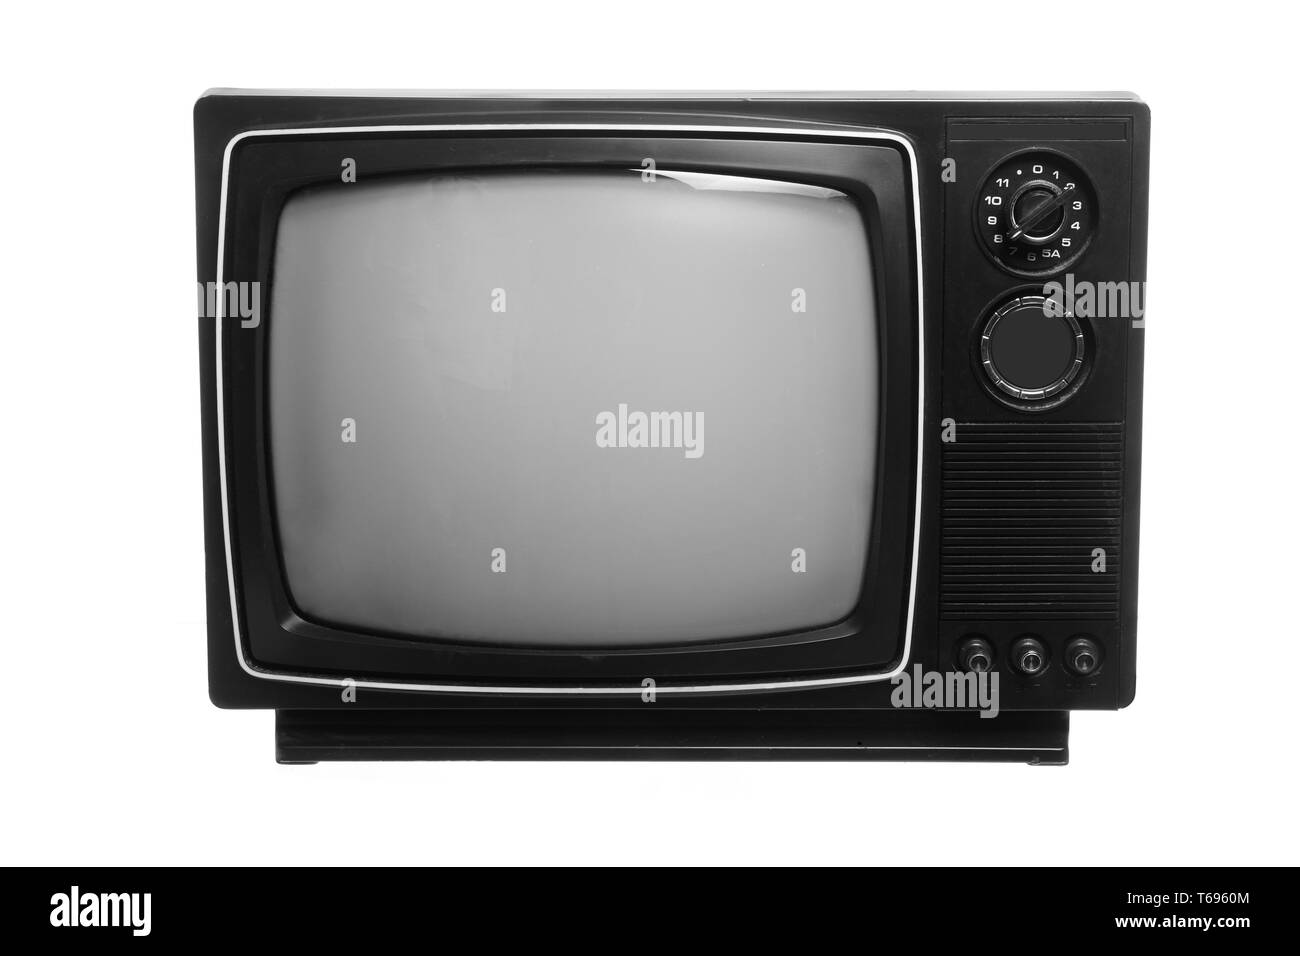 Retro Portable Television on White Background Stock Photo